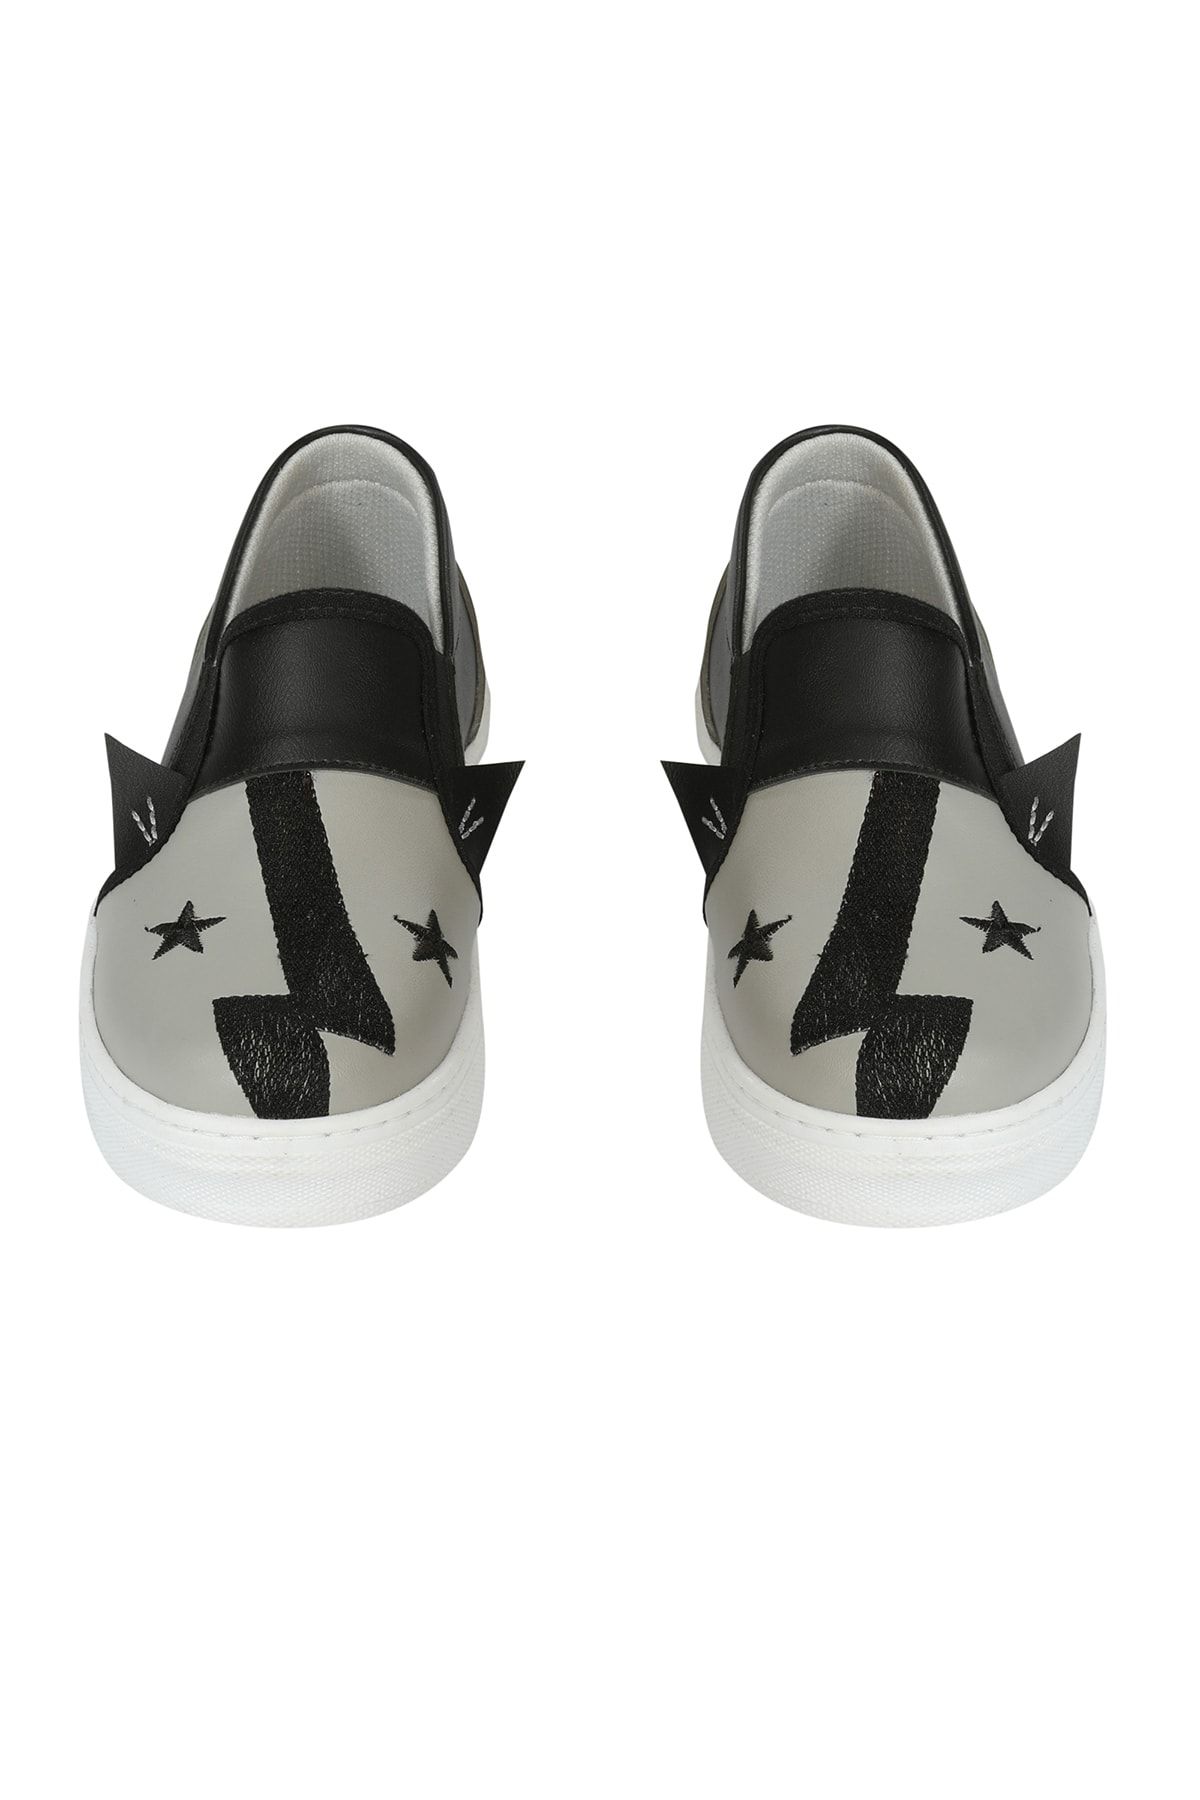 ZENOKIDO Erkek Çocuk Siyah Şimşek Star Sneakers Ayakkabı